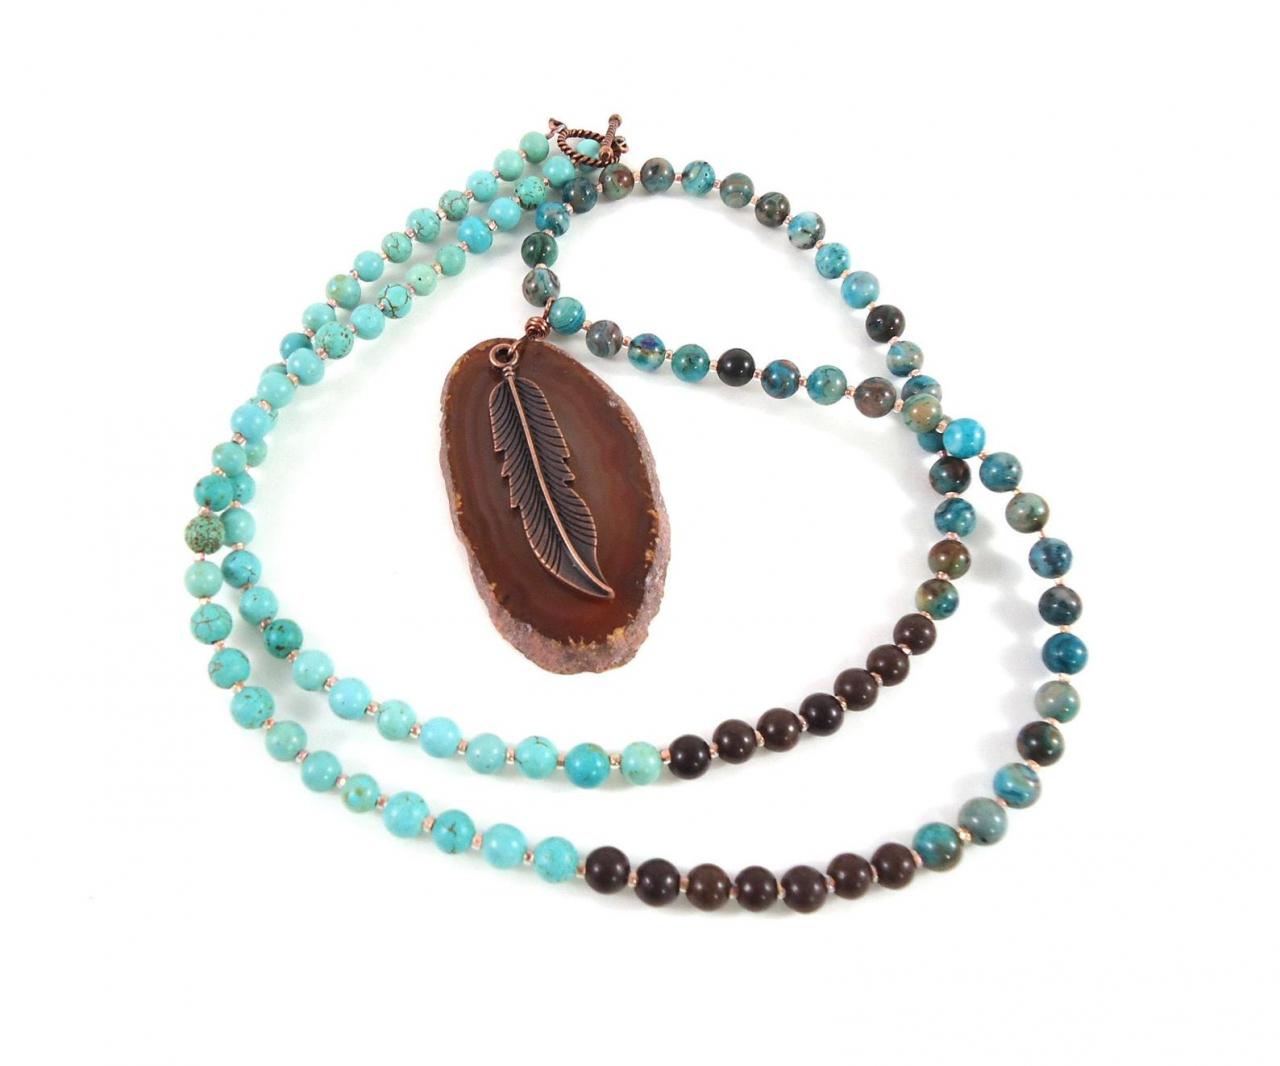 Turquoise Mala Necklace - Long Yoga Necklace - 108 Mala Prayer Beads